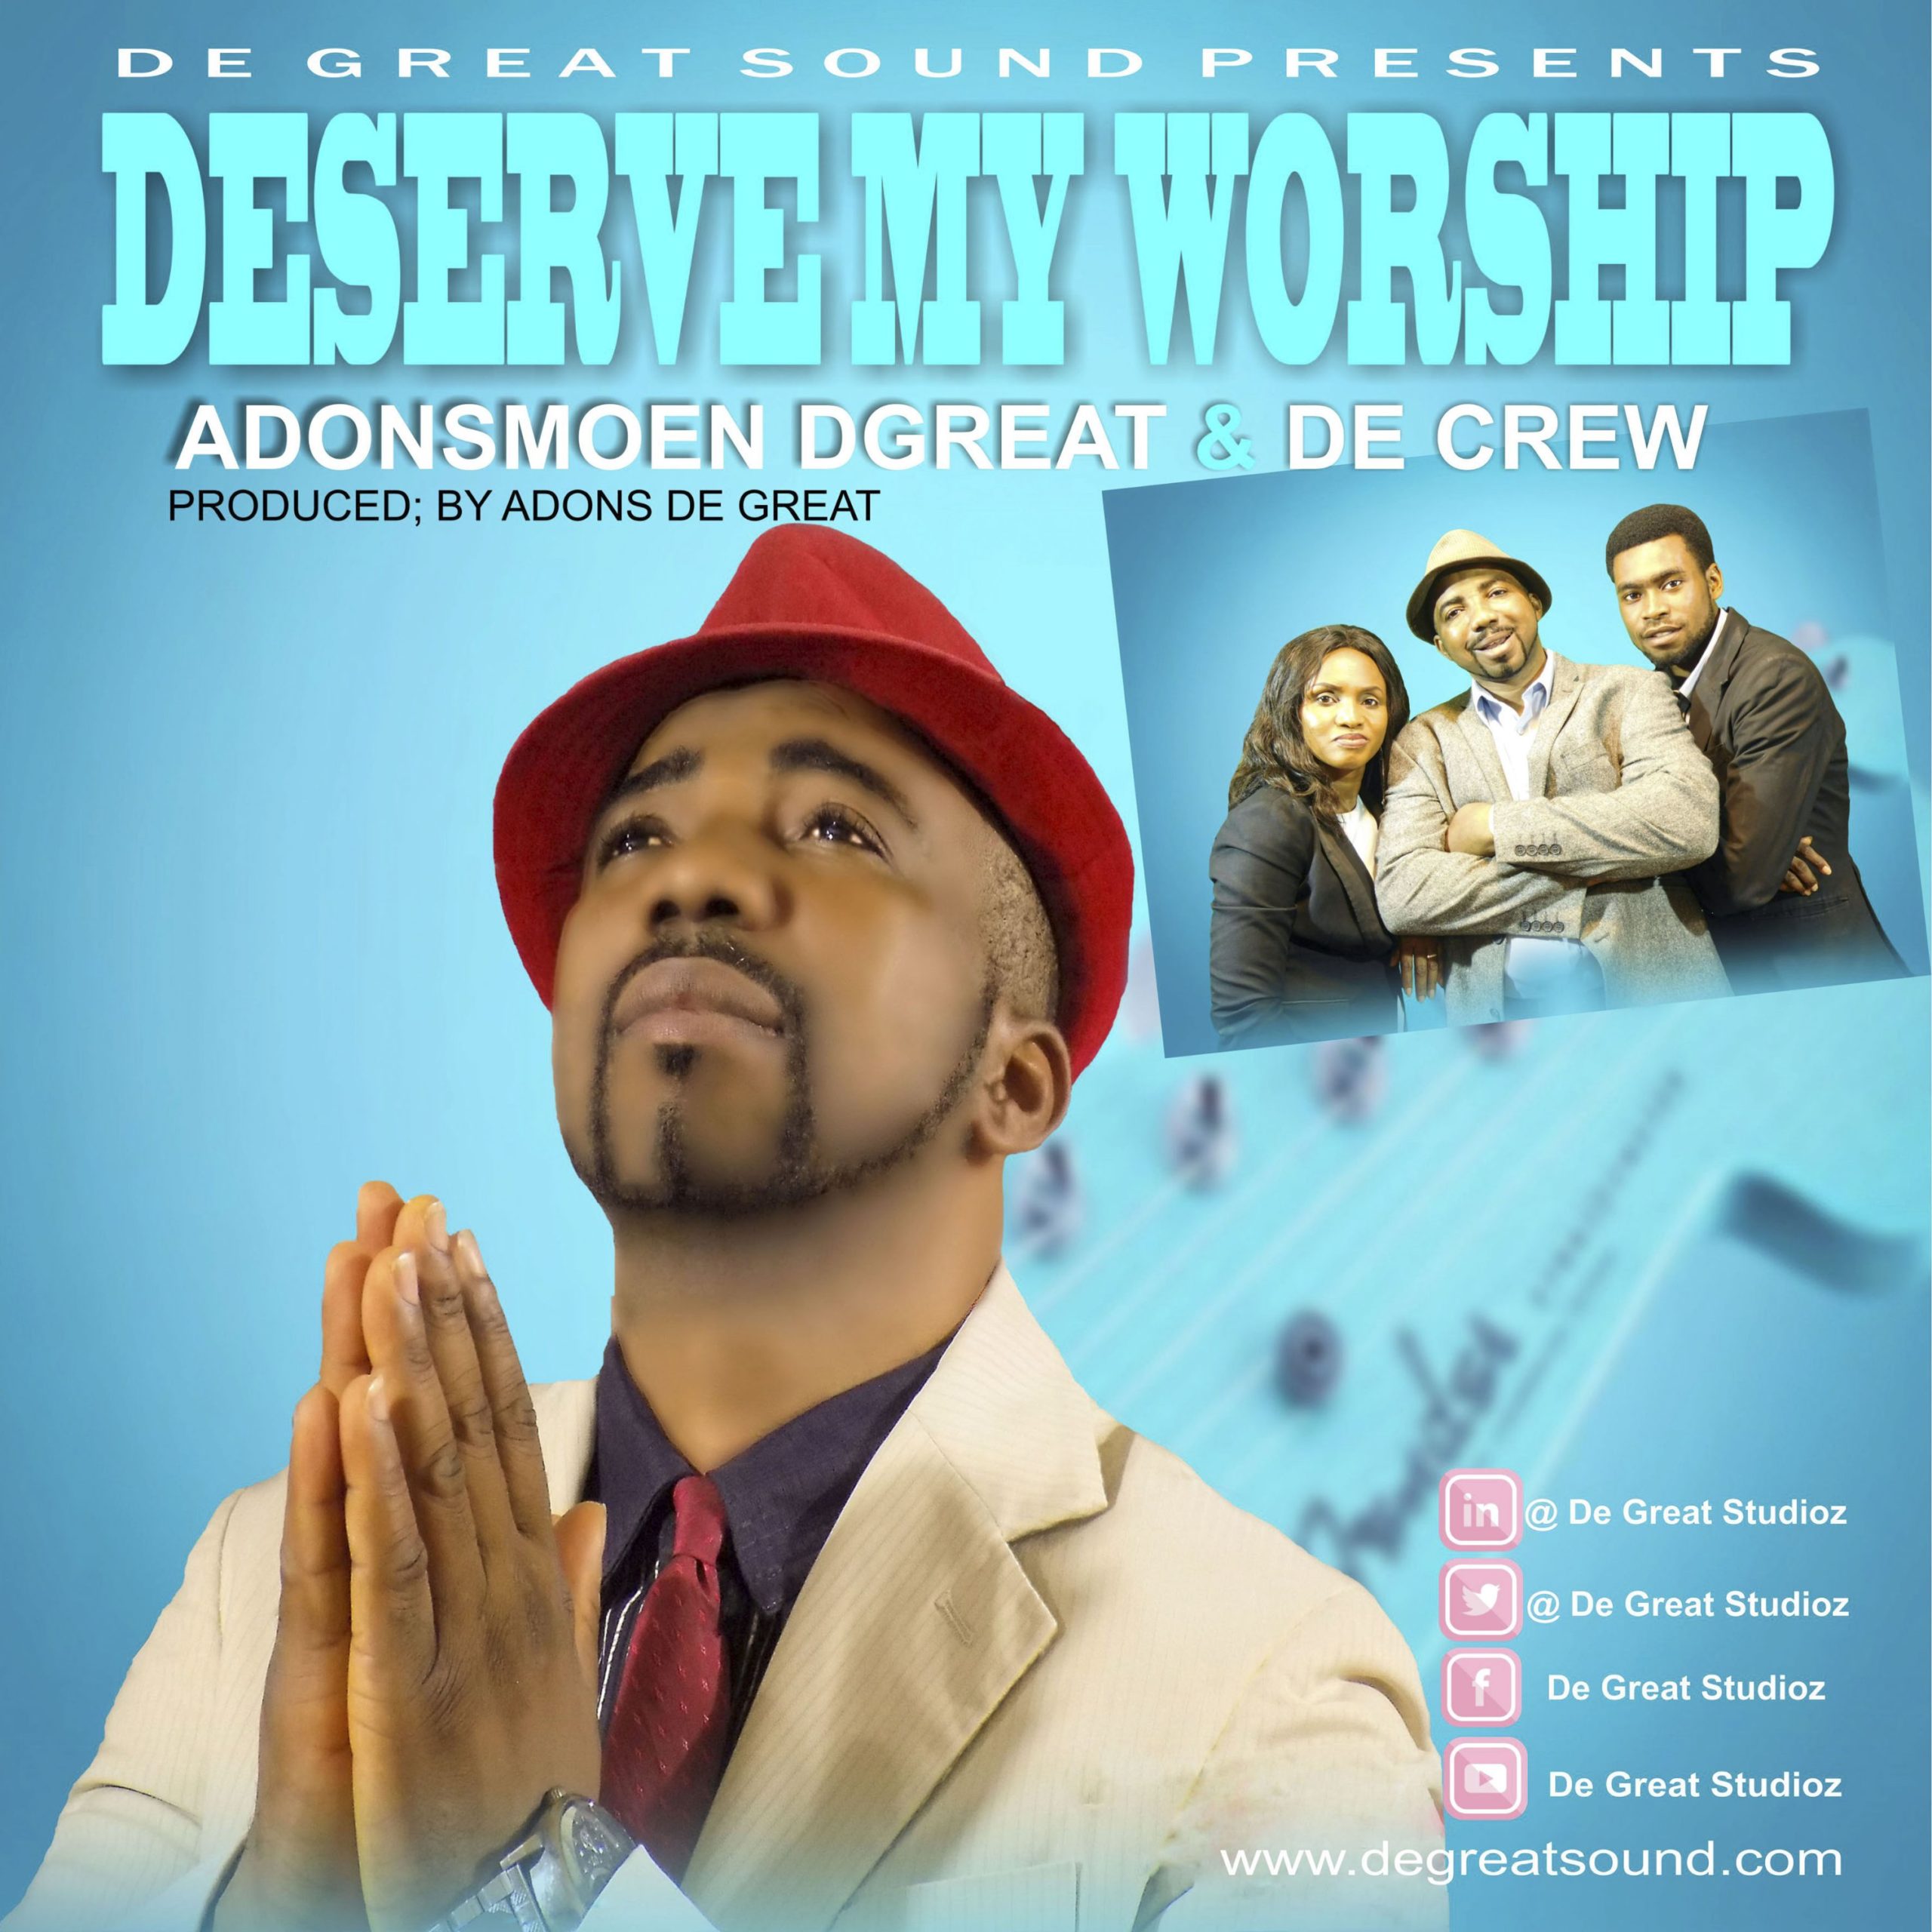 DOWNLOAD Music: Adonsmoen Dgreat & De Crew - Deserve My Worship